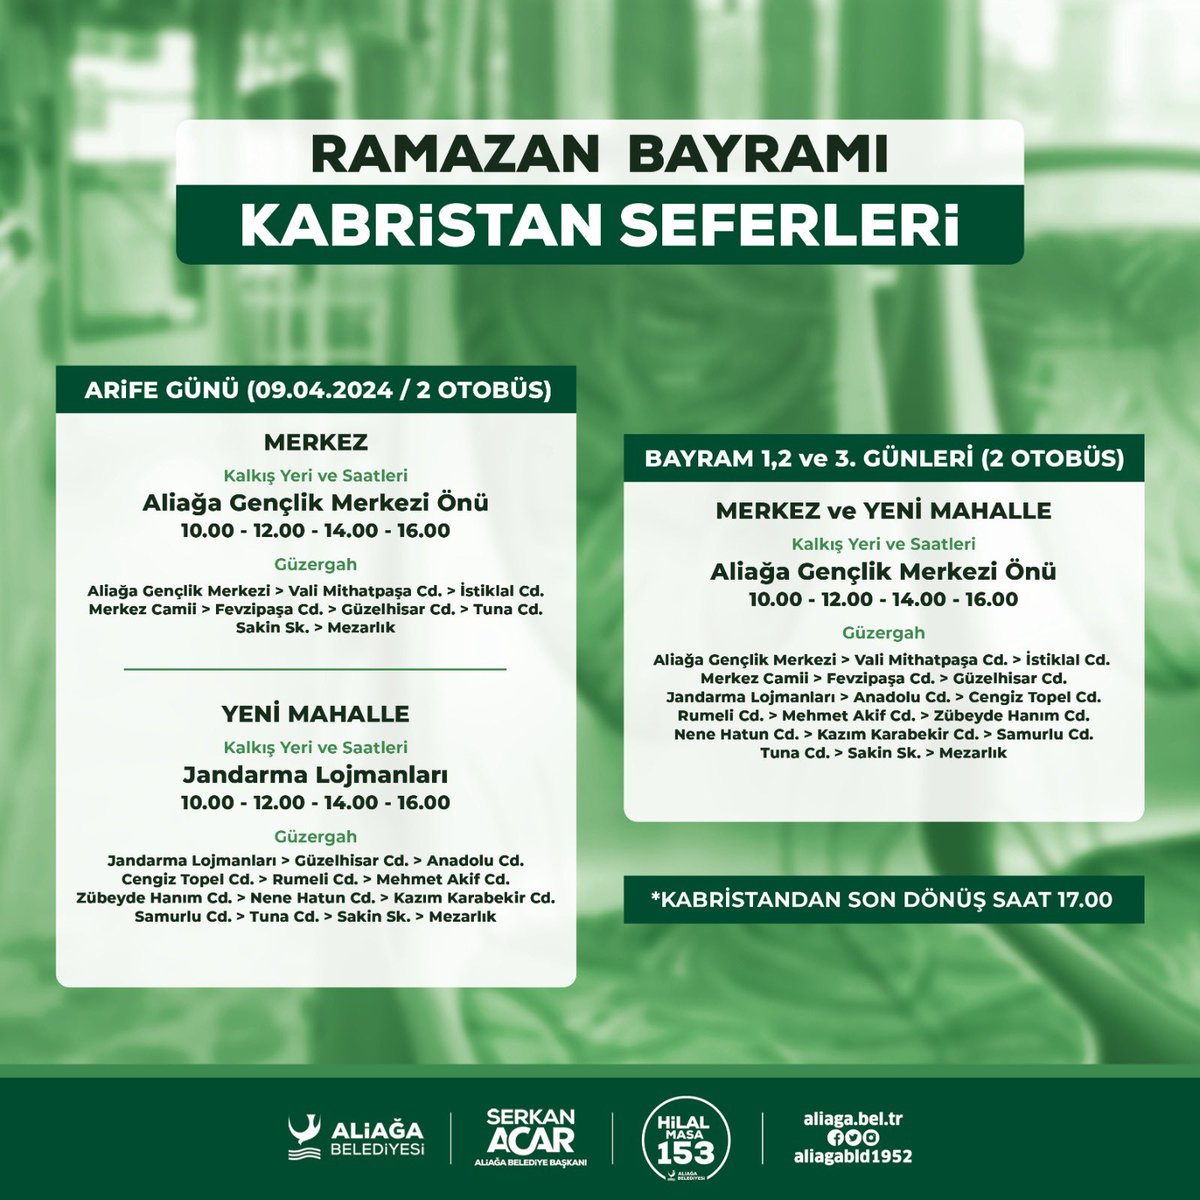 🚎 Arife günü ve bayram günlerinde kabristan ziyaretlerinizi servis araçlarımızı ücretsiz kullanarak gerçekleştirebilirsiniz. #Aliağa #AliağaBelediyesi #SerkanAcar #İzmir